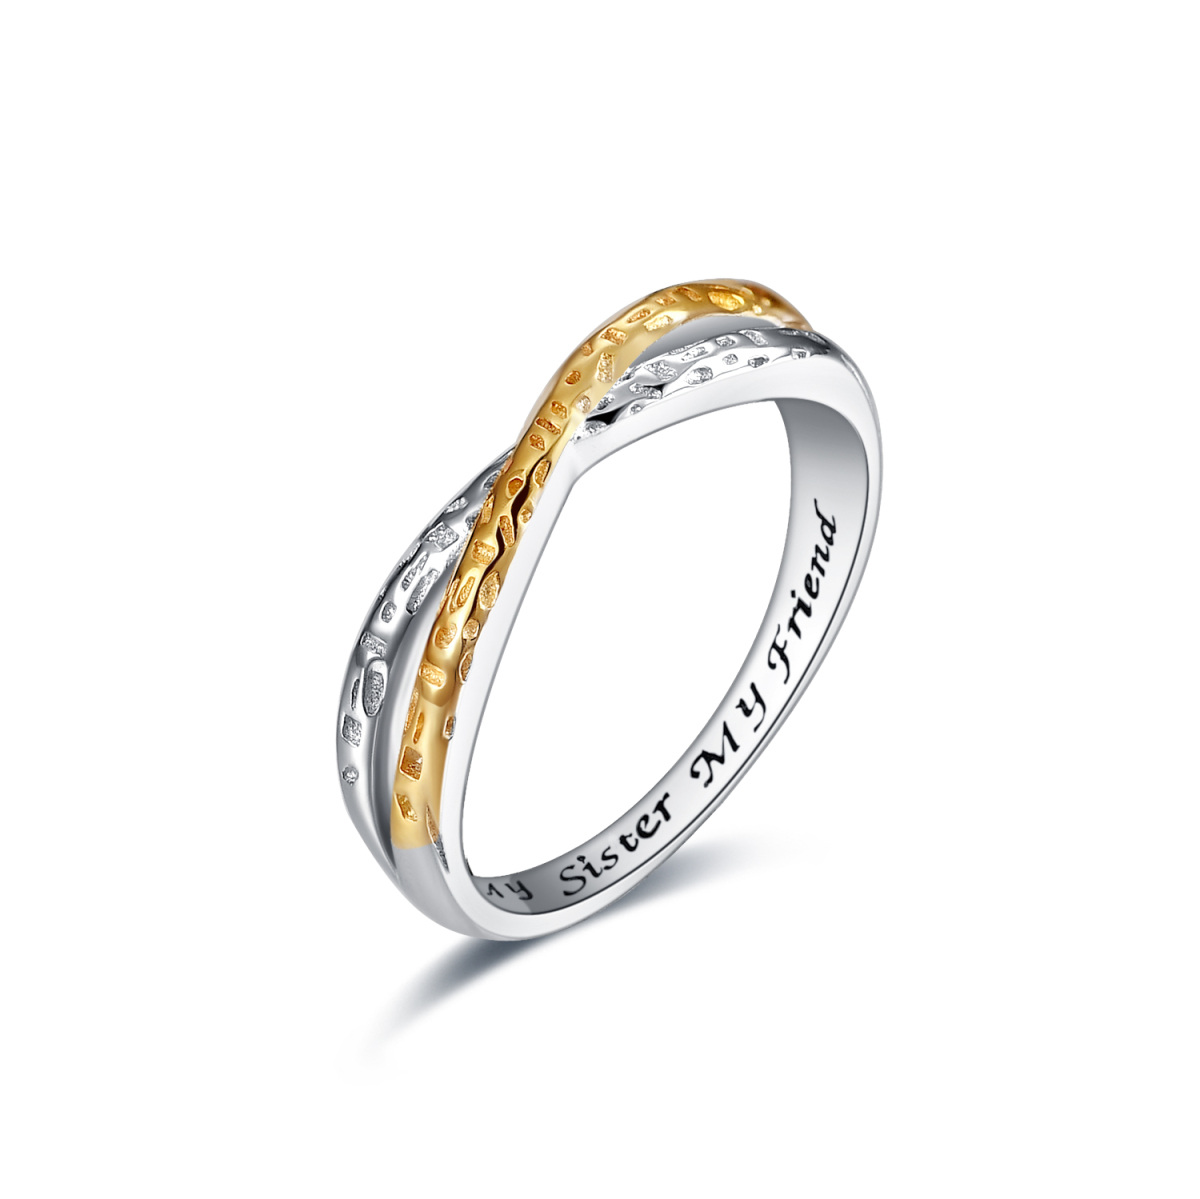 Sterling Silber zweifarbig Unendlichkeit Symbol Ring mit eingraviertem Wort-1